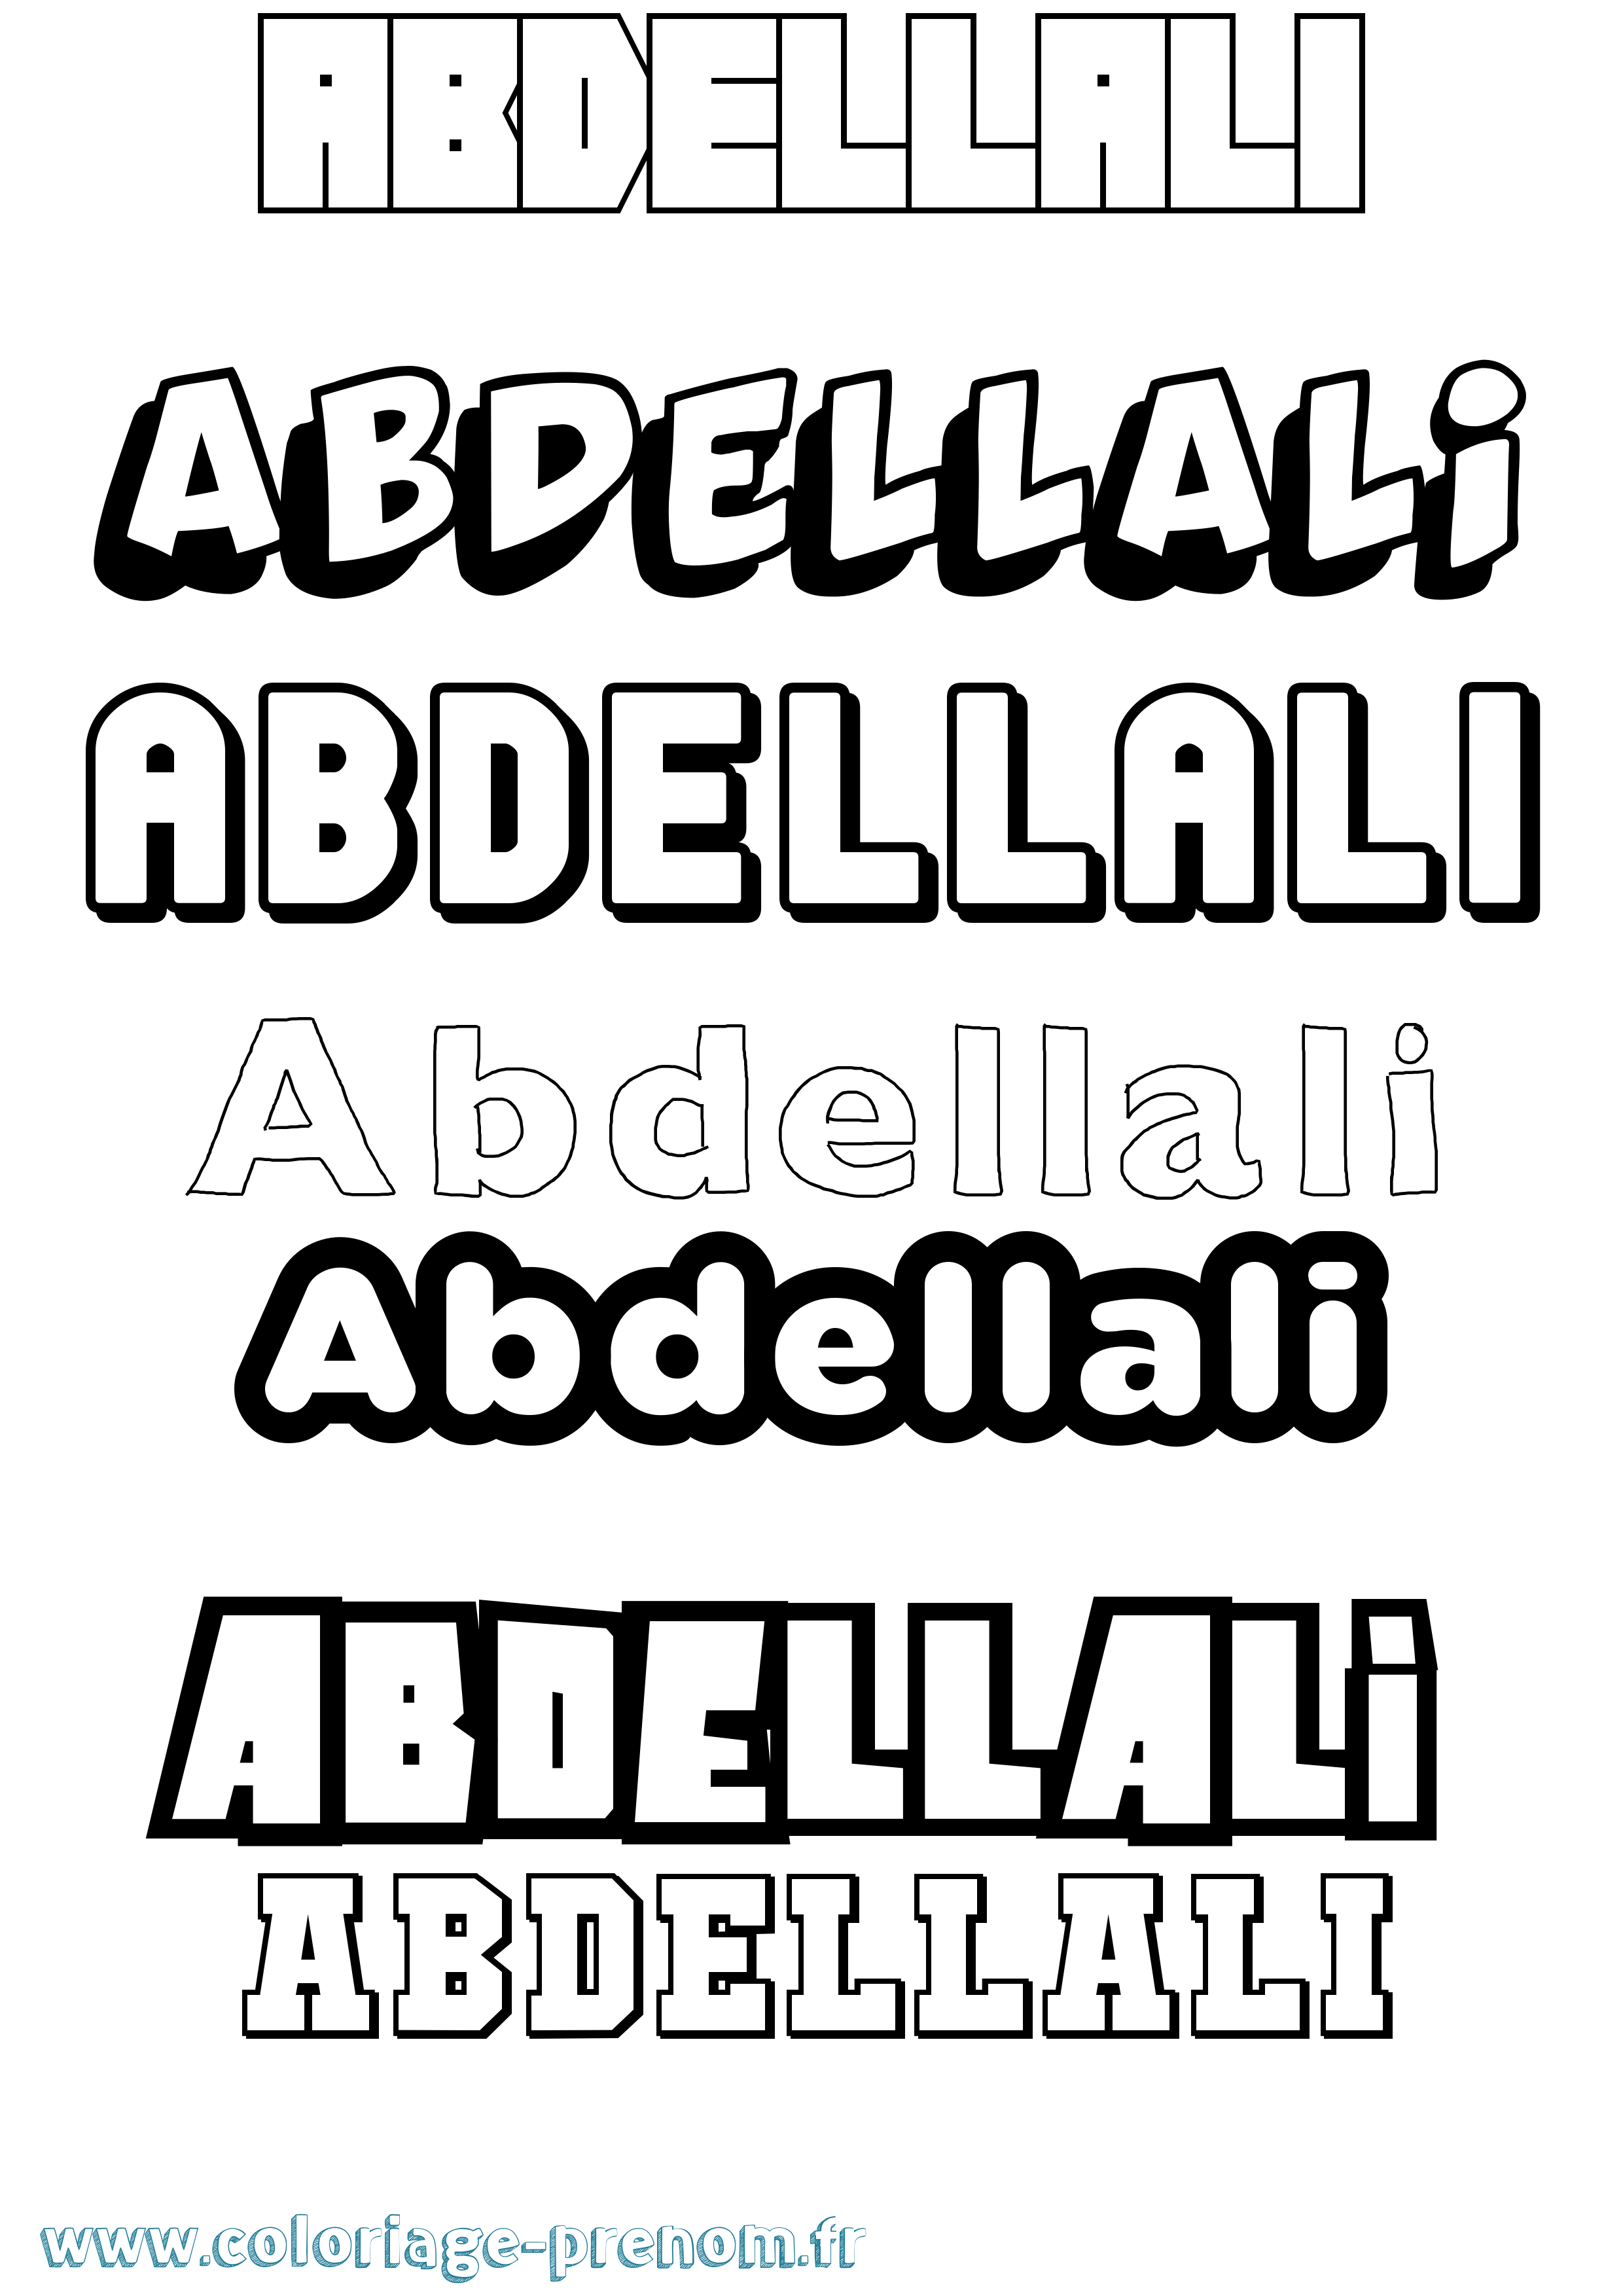 Coloriage prénom Abdellali Simple